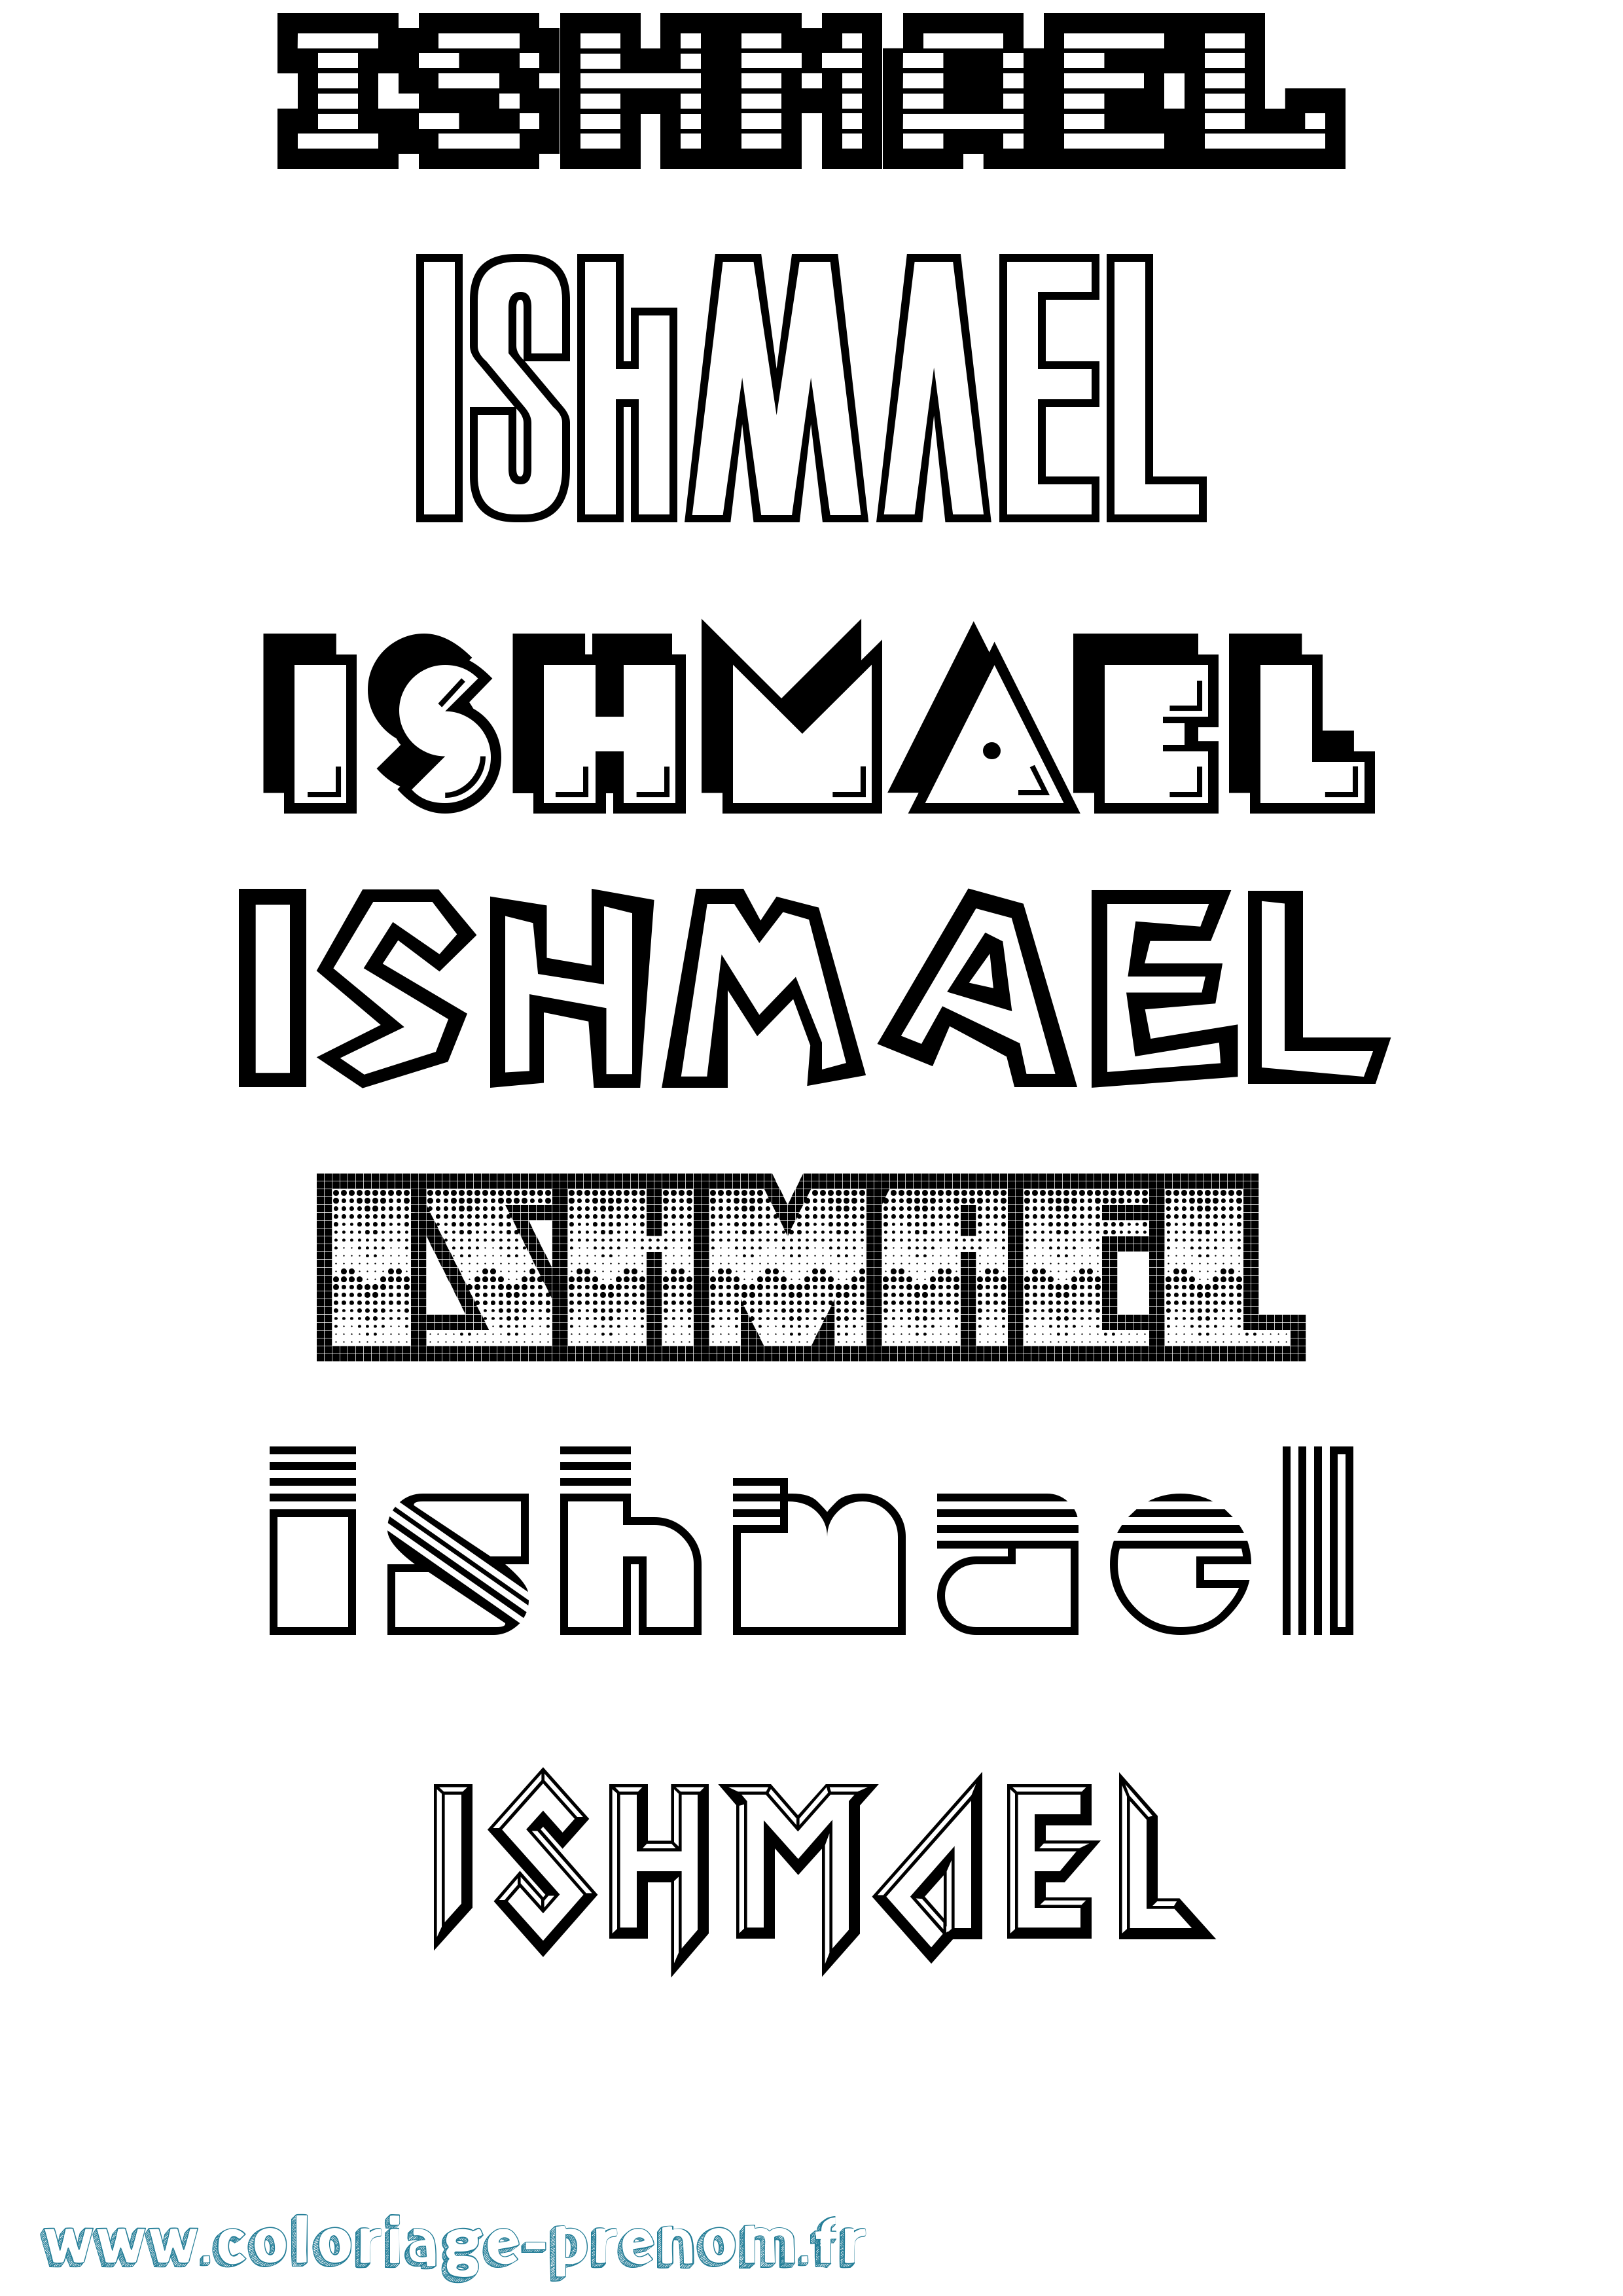 Coloriage prénom Ishmael Jeux Vidéos